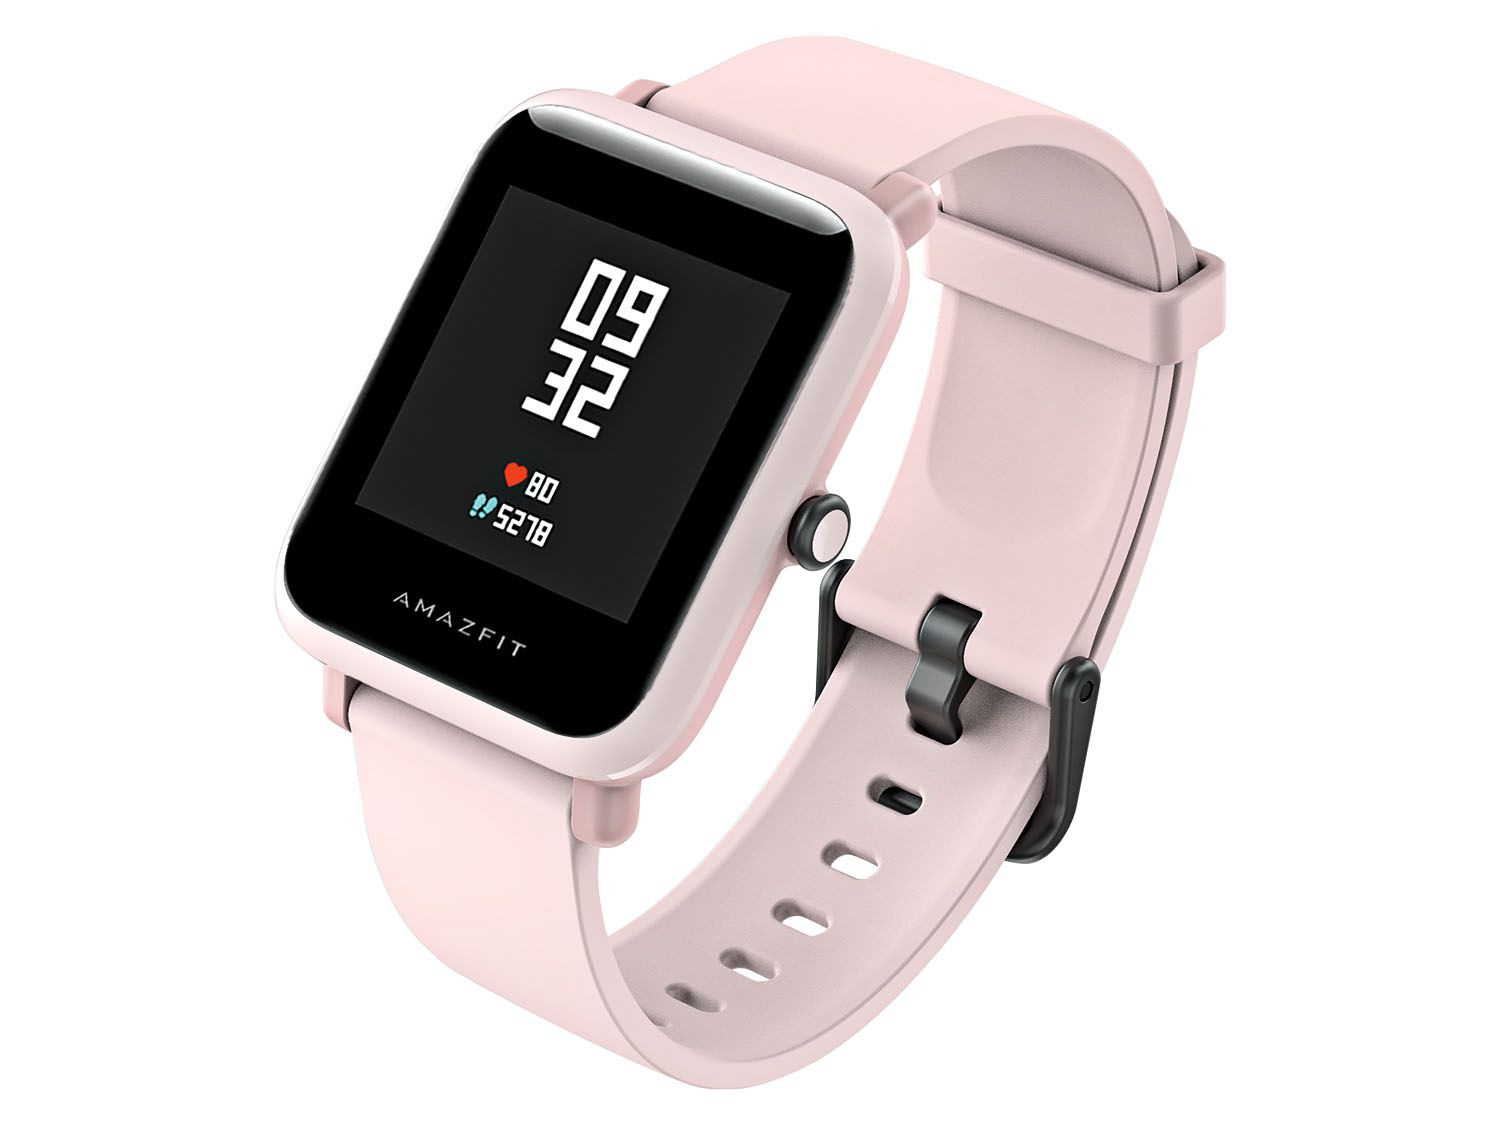 hypothese diepte Smeltend Smartwatch Amazfit Bip S online kopen | LIDL